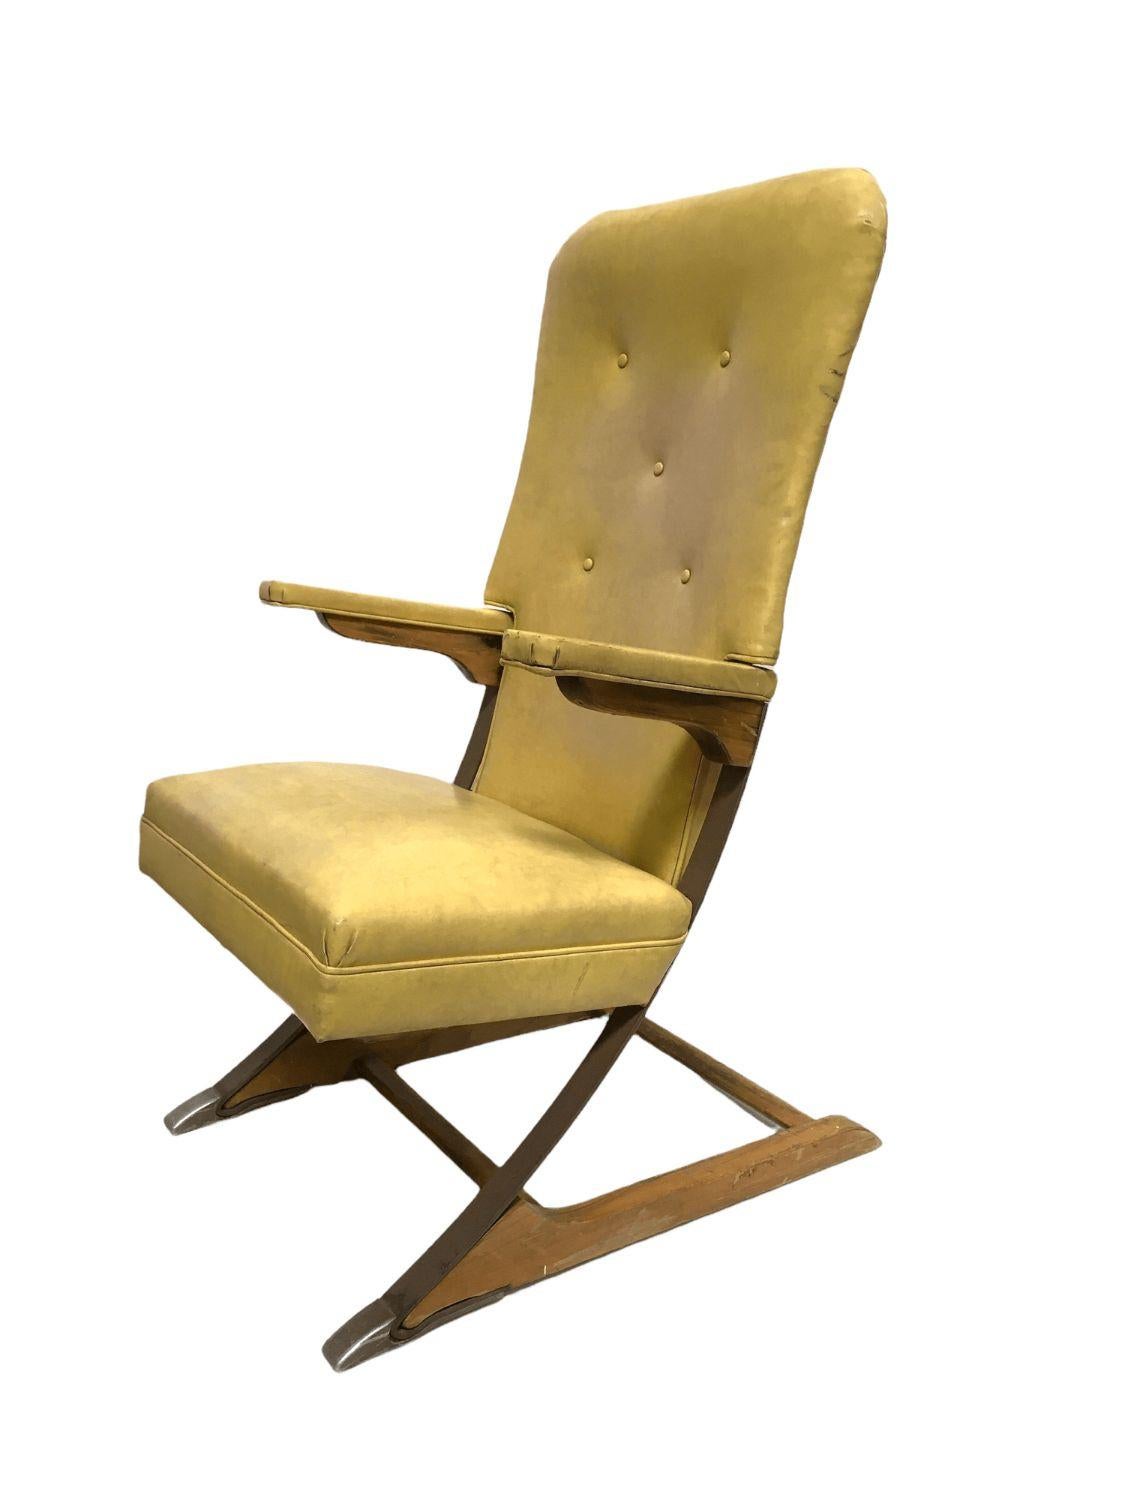 rok a chair